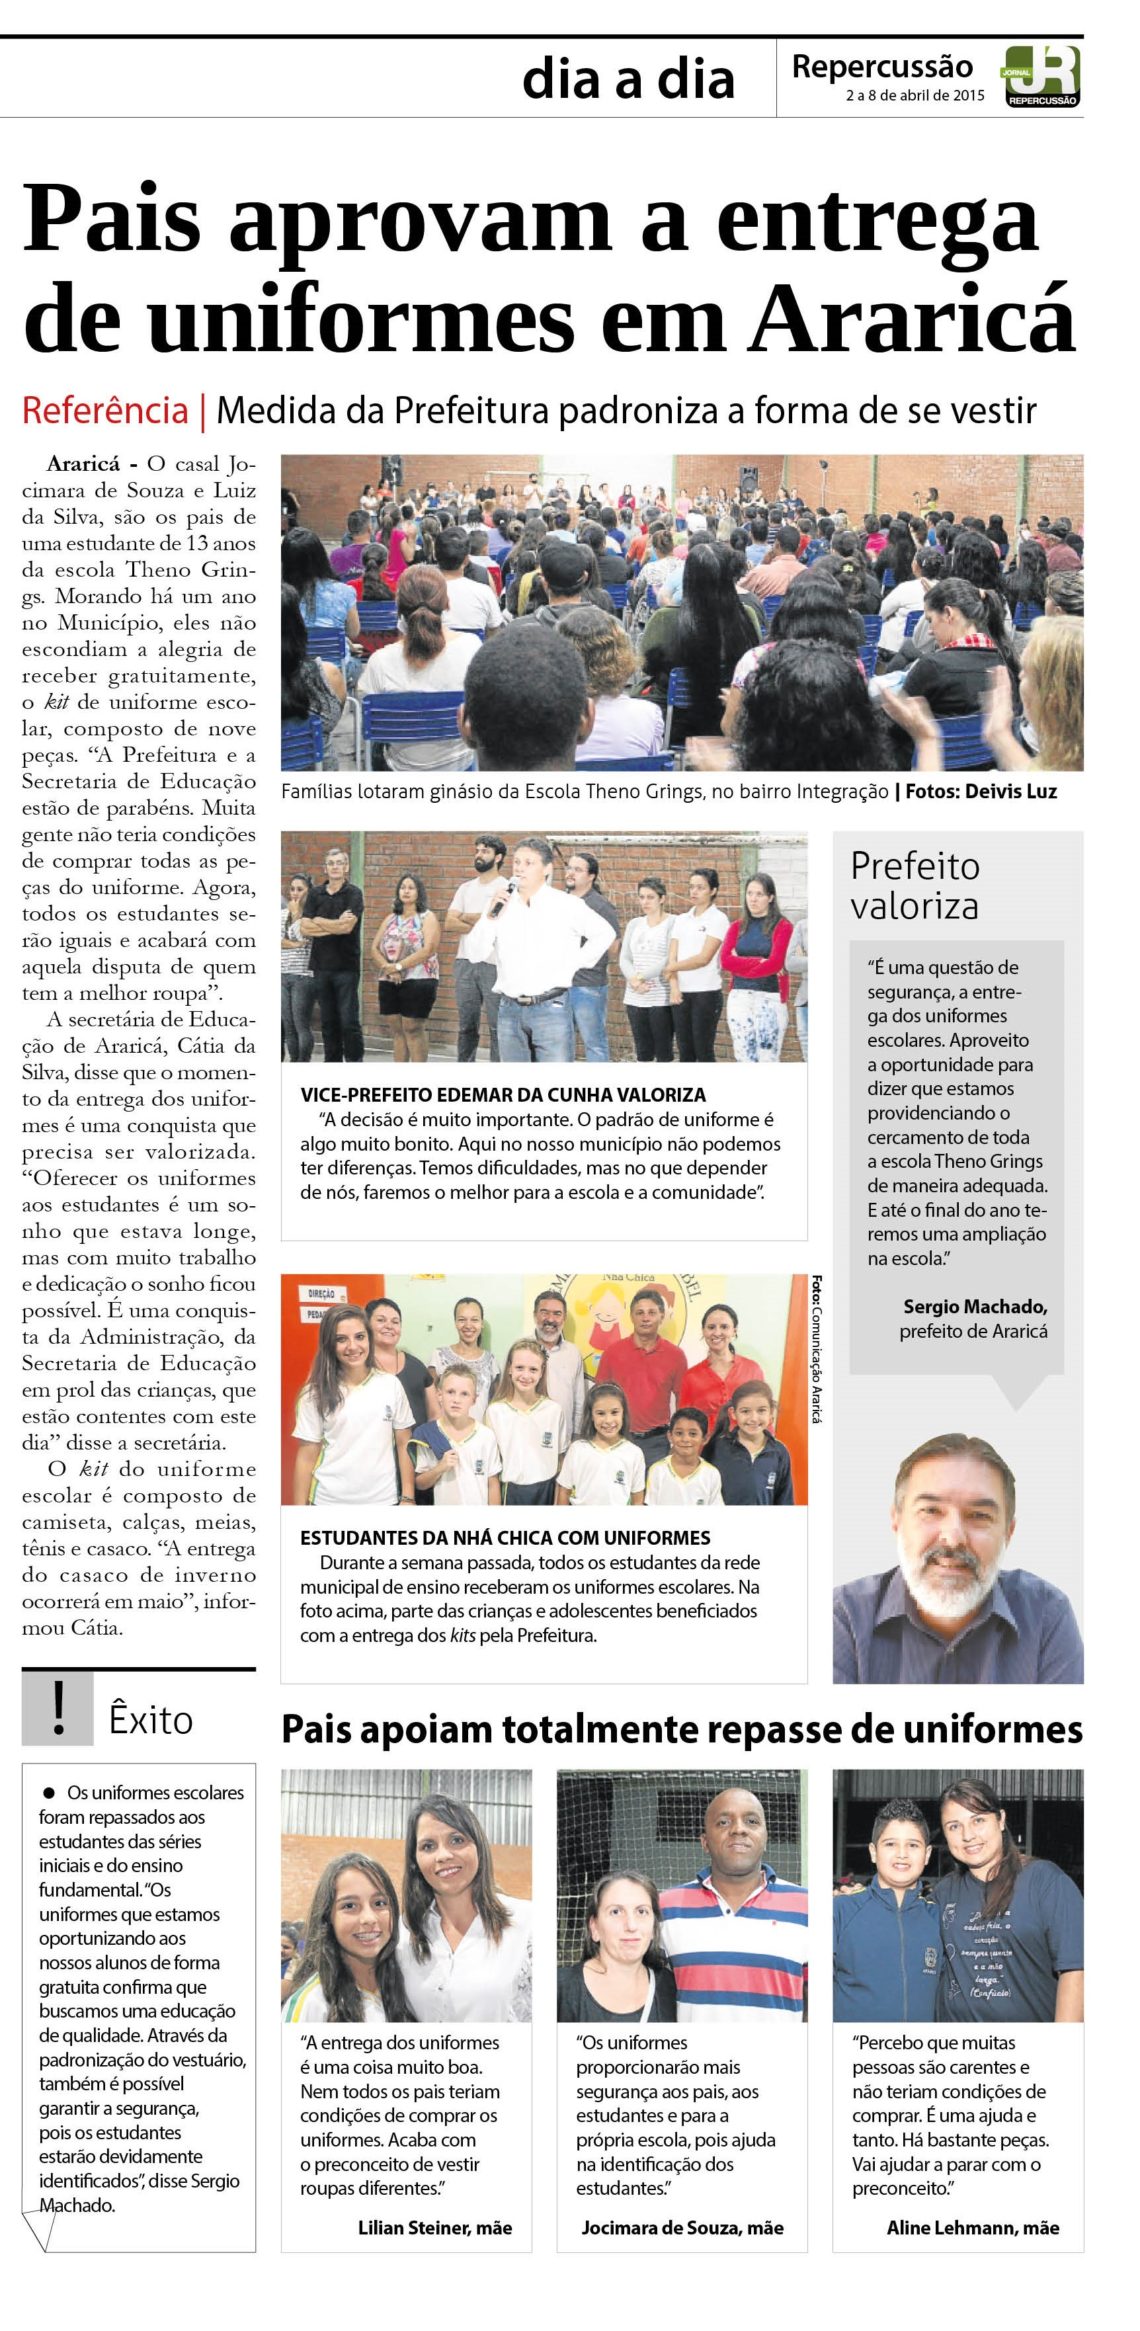 Matéria publicada, em 2015, pelo Jornal Repercussão